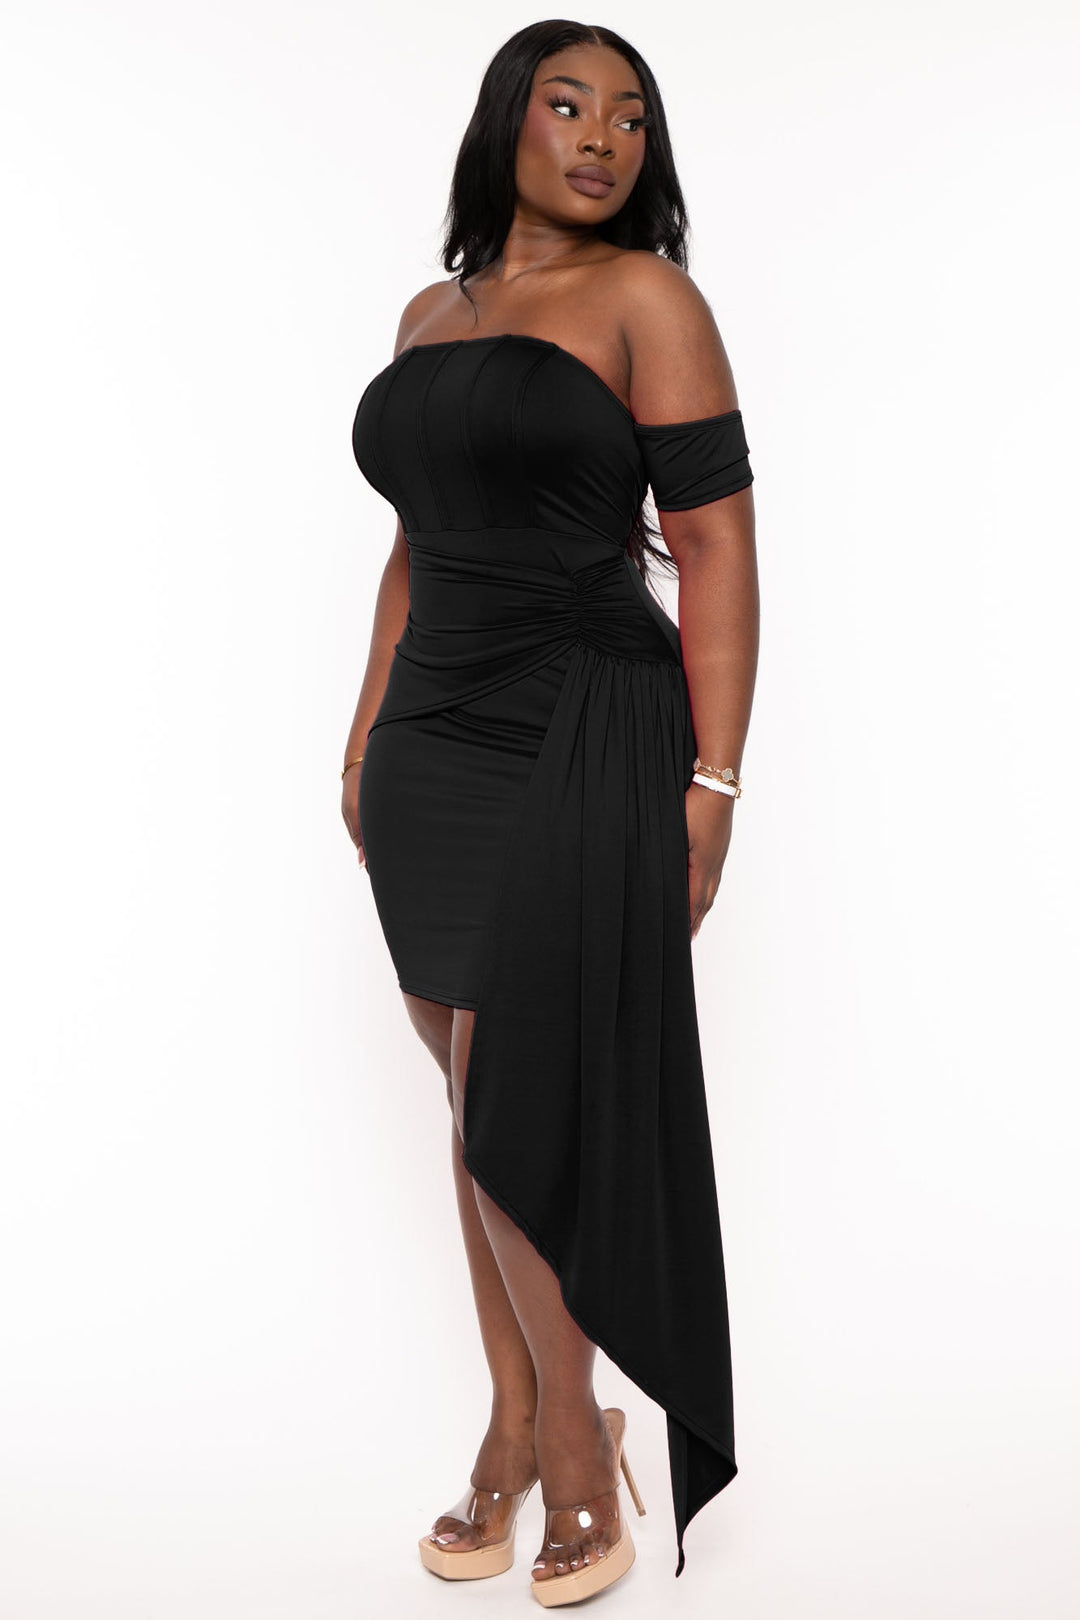 Curvy Sense Dresses Plus Size Ambrose Drape Dress - Black